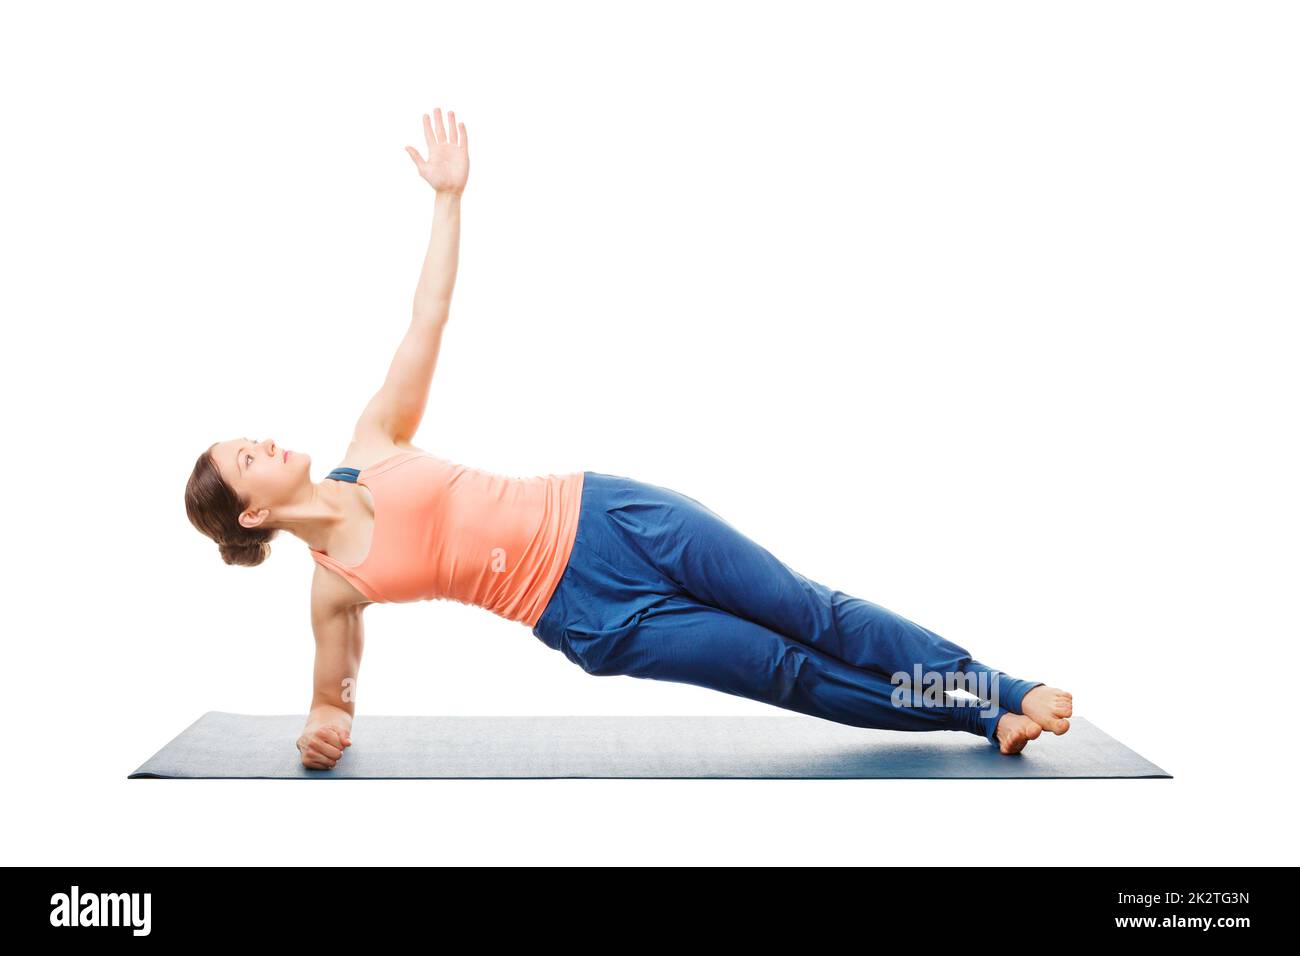 Woman doing yoga asana Vasisthasana - côté planche Banque D'Images